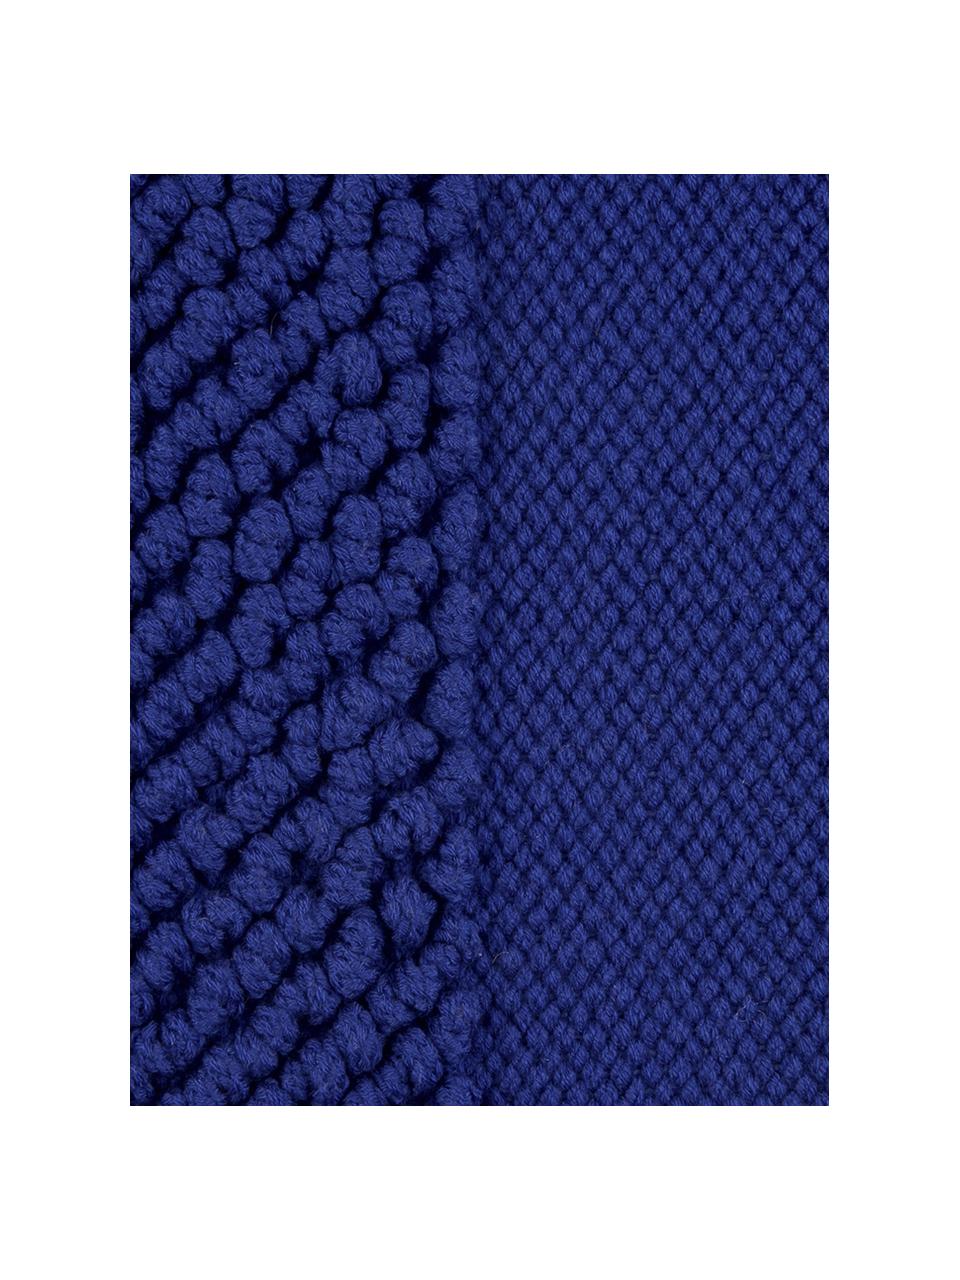 Kussenhoes Andi met gestructureerde oppervlak, Blauw, 40 x 40 cm